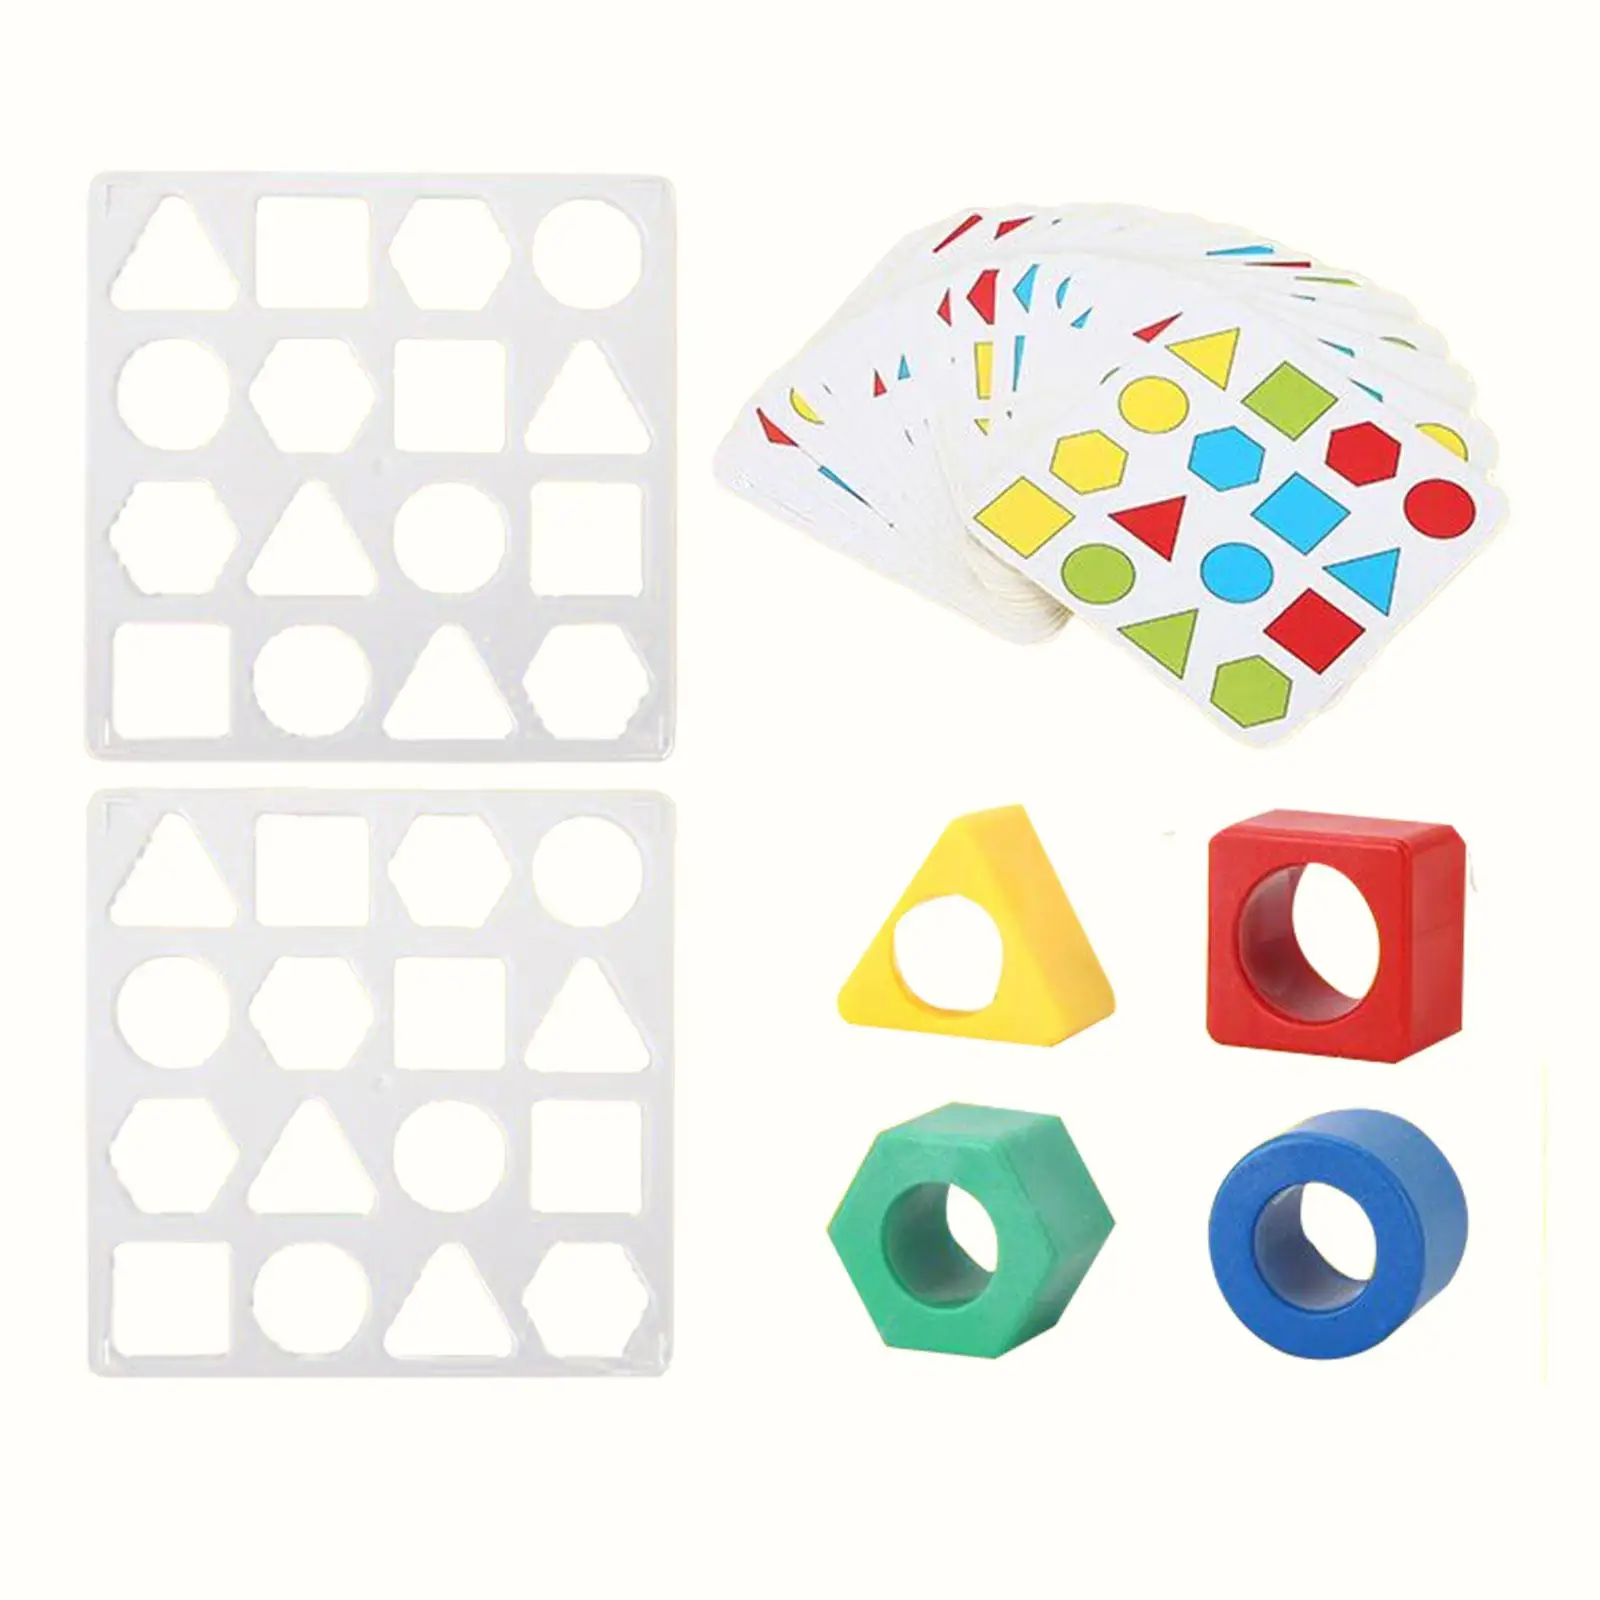 

Пазл в форме s для раннего развития, игра-головоломка геометрической формы, для дошкольного возраста